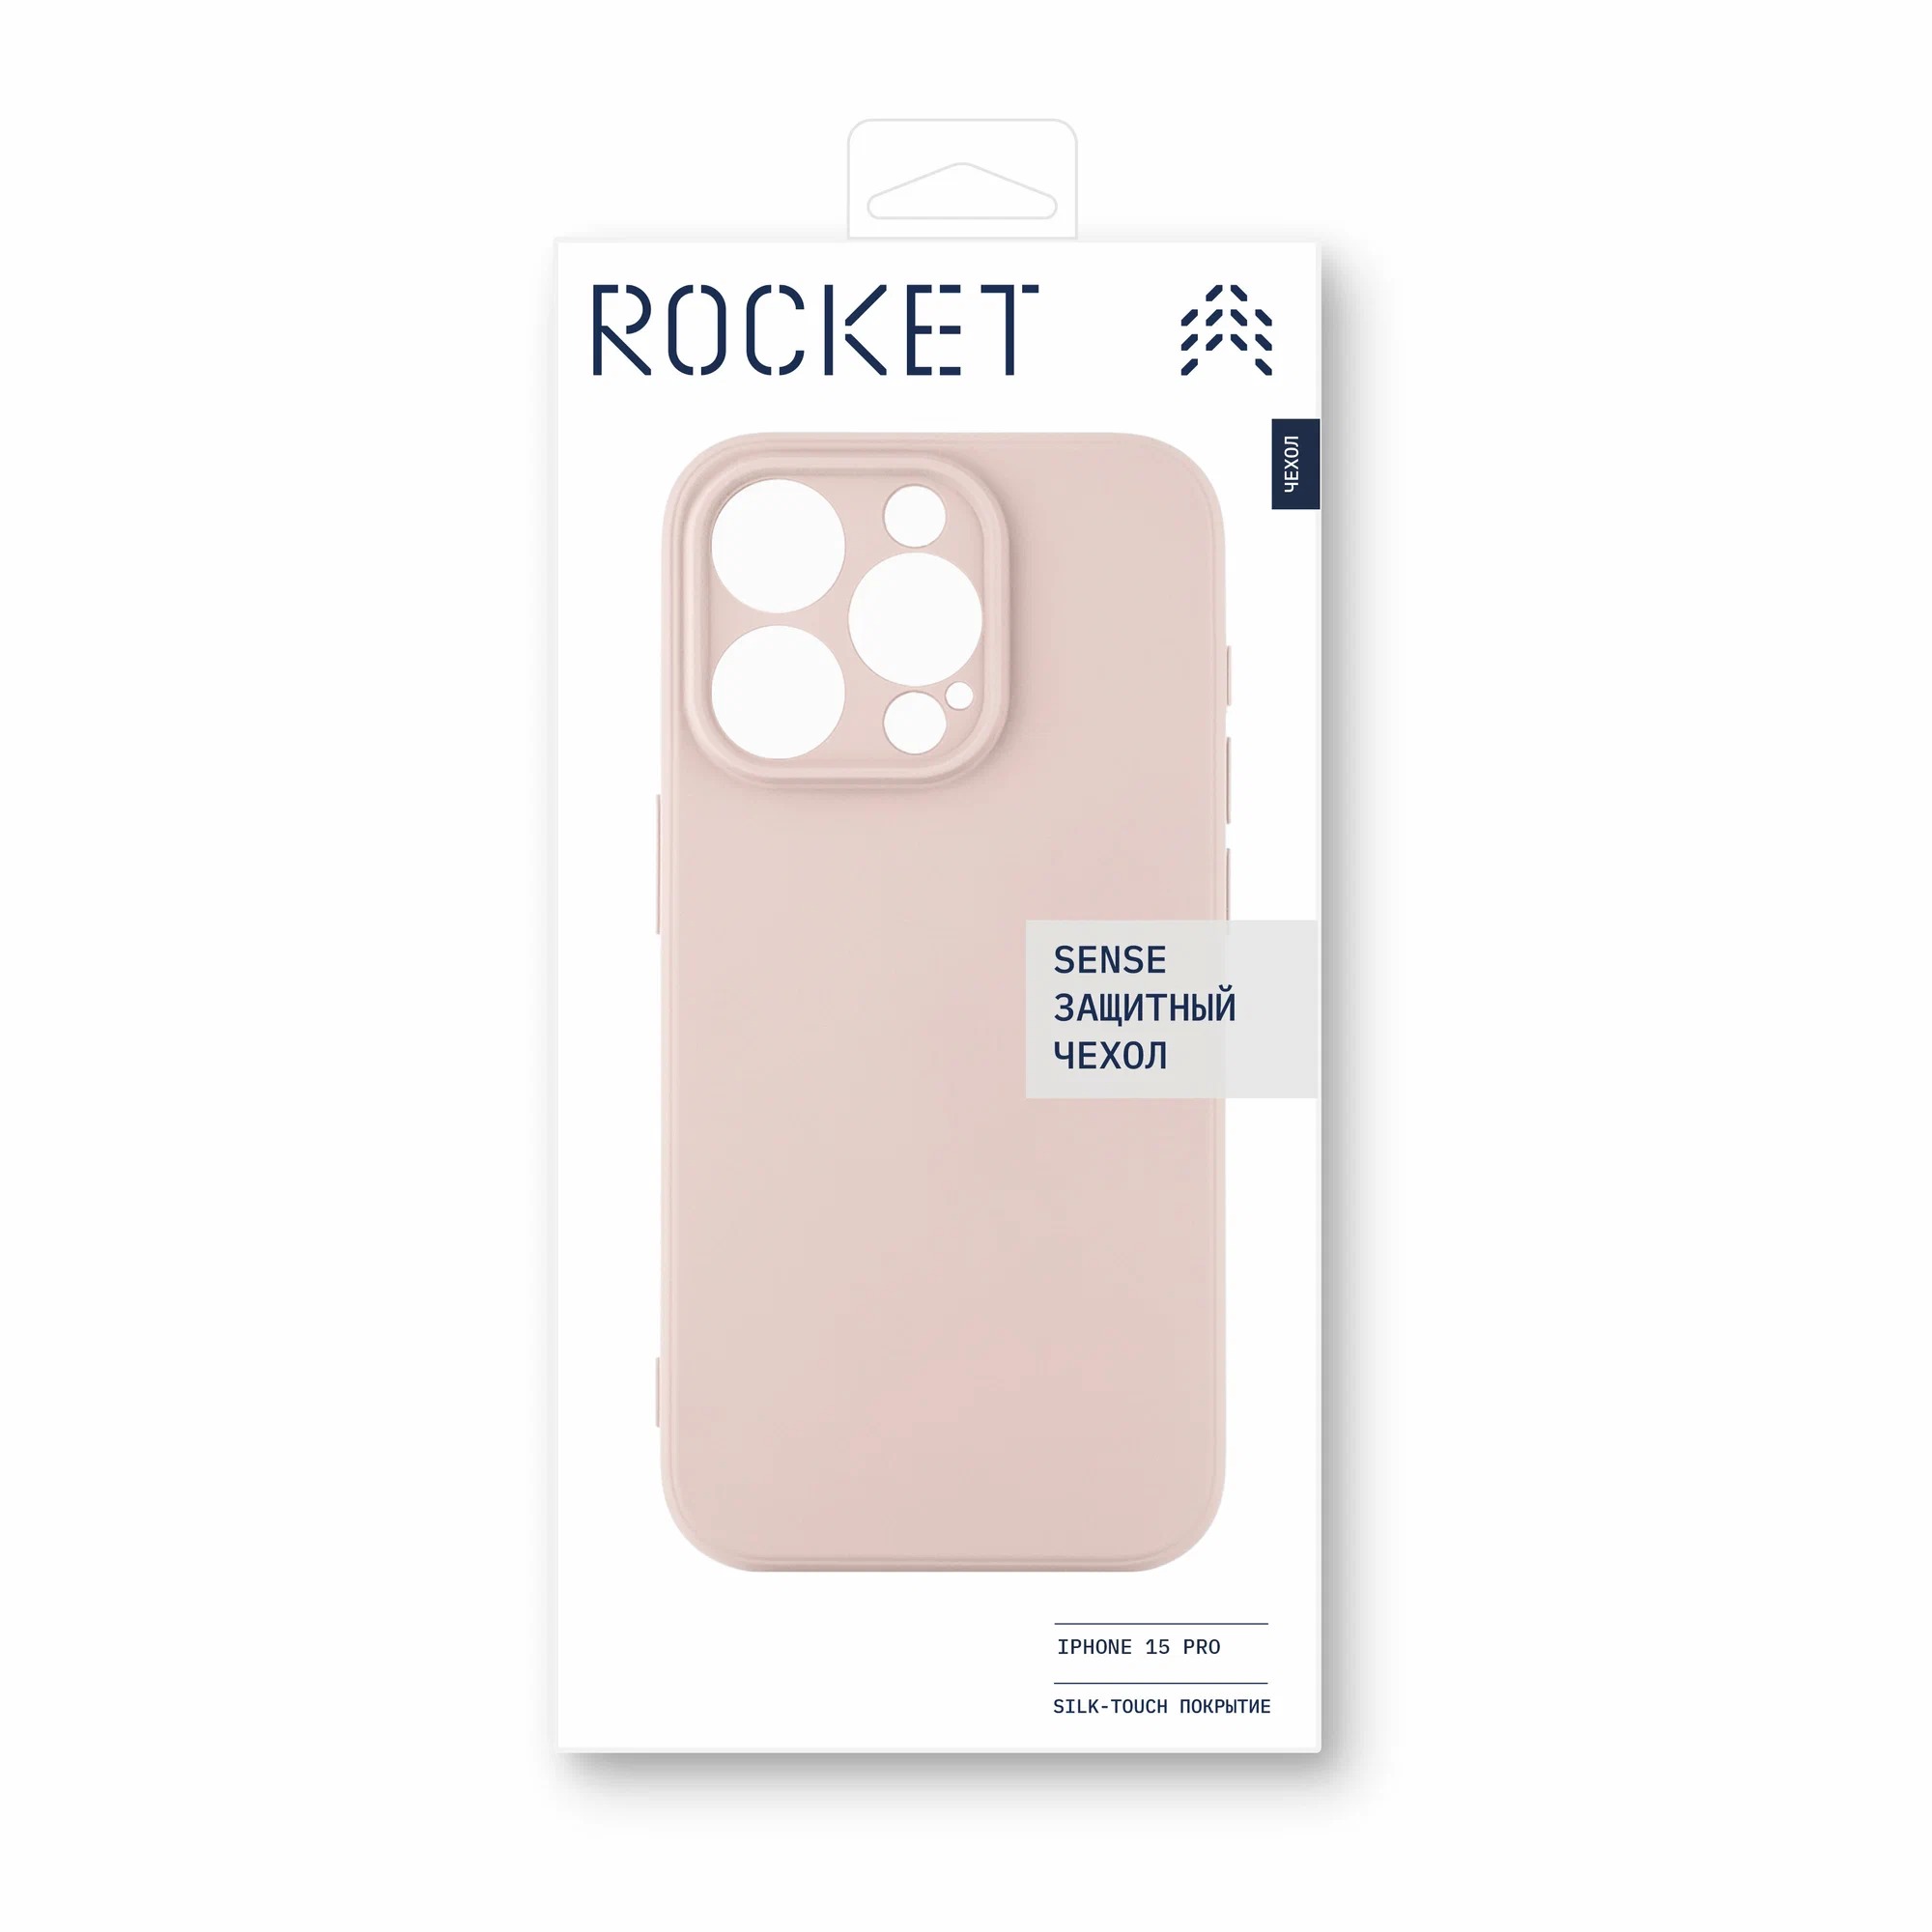 Чехол защитный Rocket Sense для iPhone 15 Pro, soft-touch матовый, TPU, персиковый